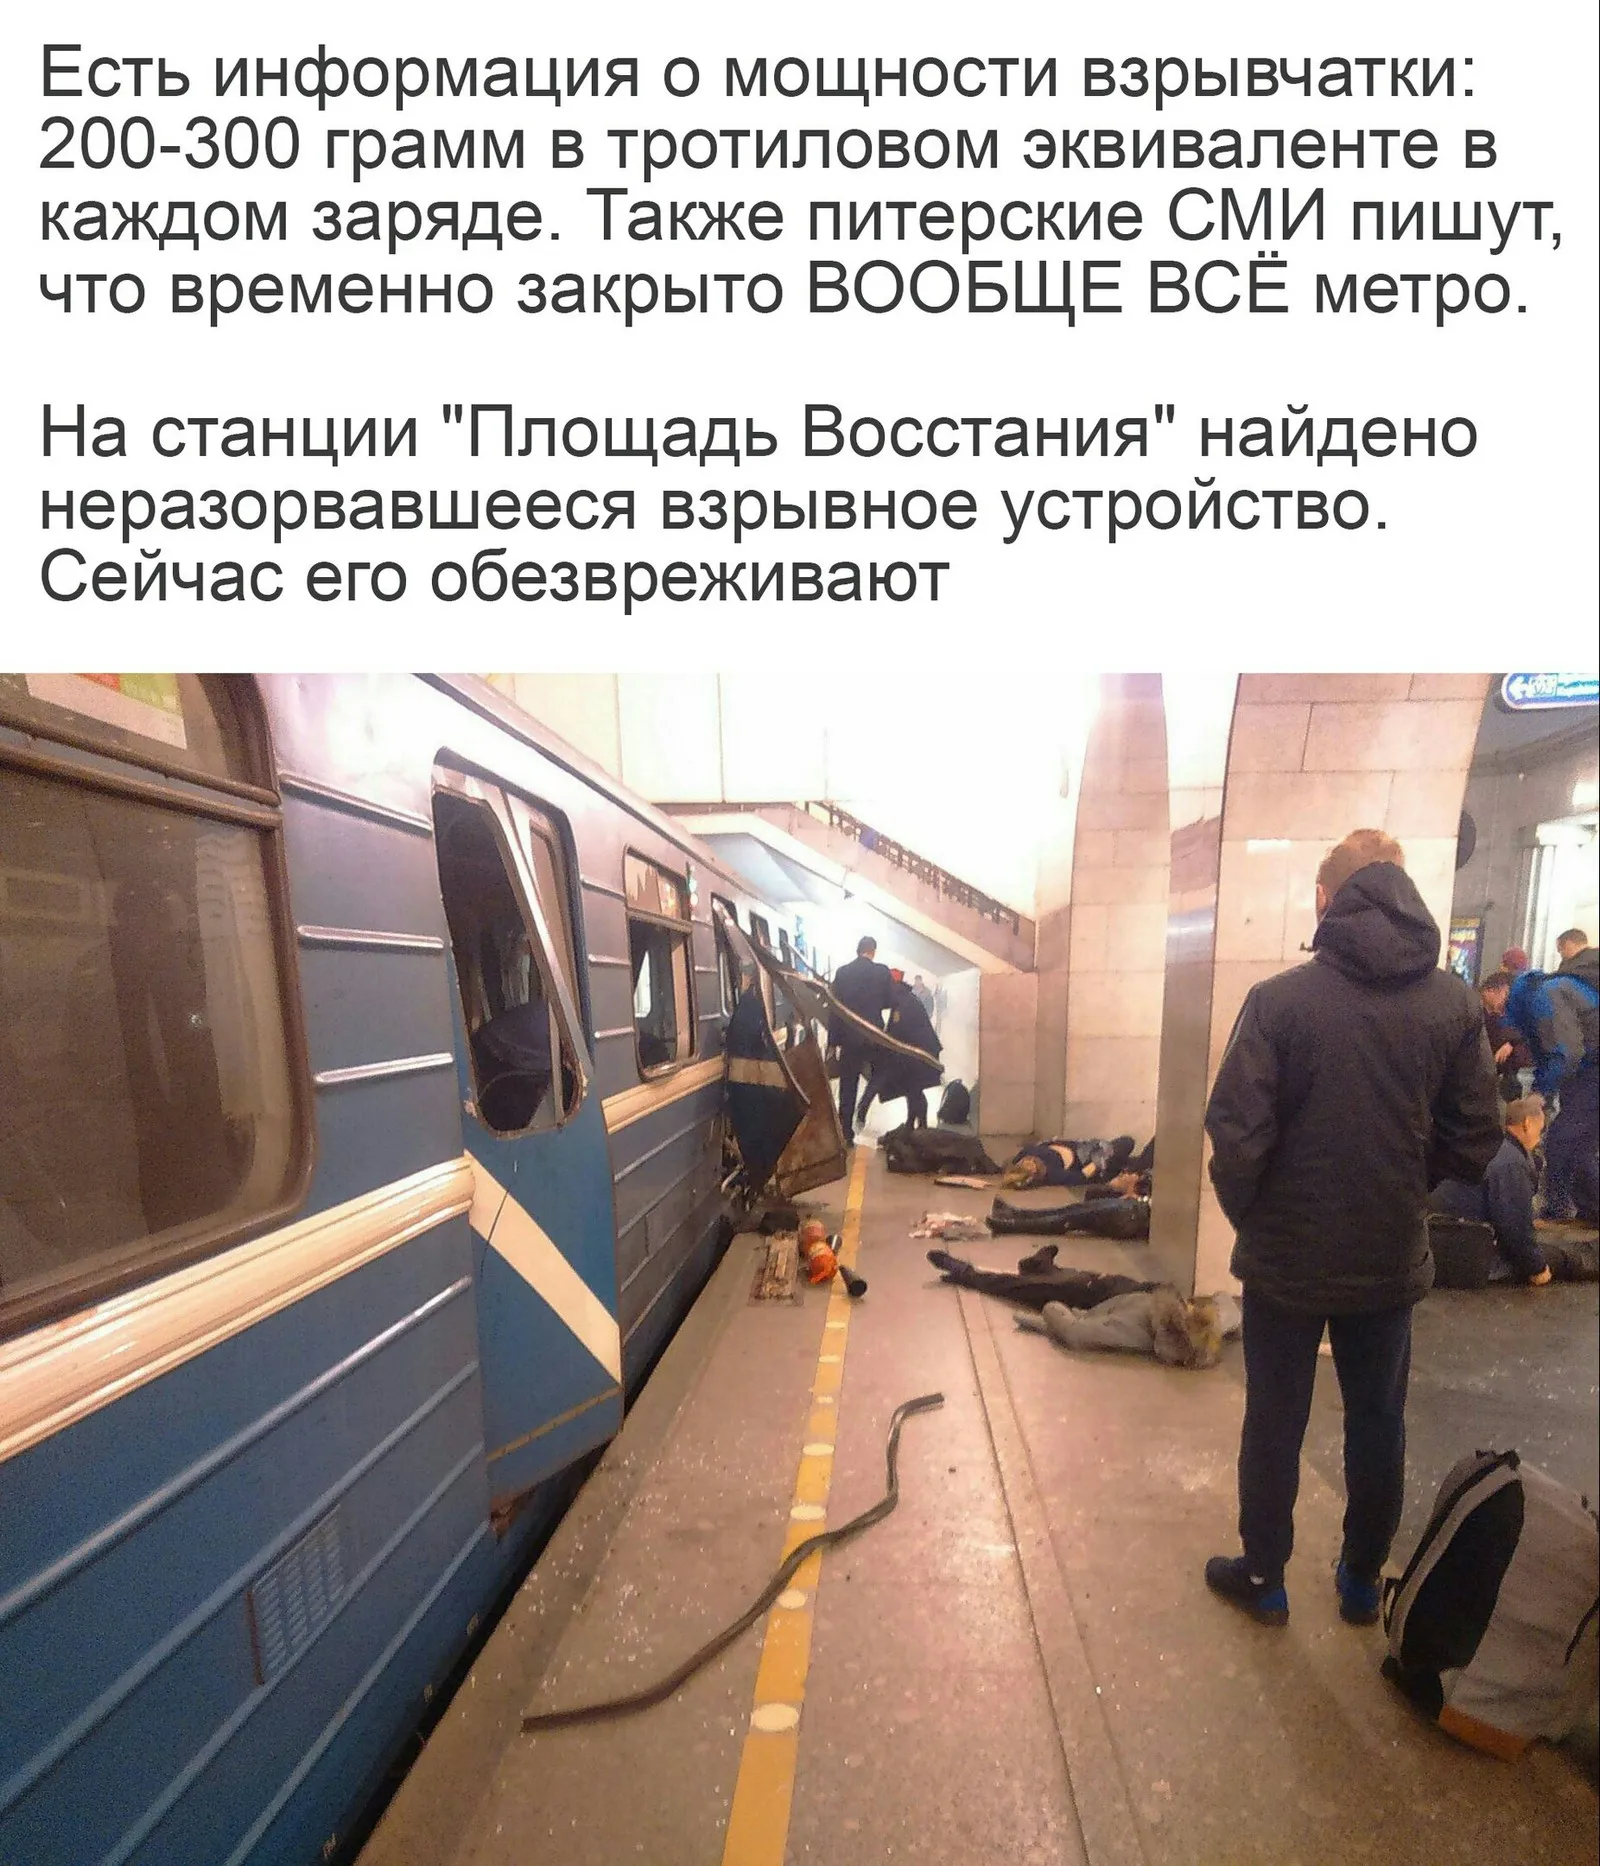 Какие теракты были в санкт петербурге. Теракт в Санкт-Петербурге в метро 2017. Теракт в метро СПБ 3 апреля 2017. Взрыв в метро Санкт Петербурга 2017.